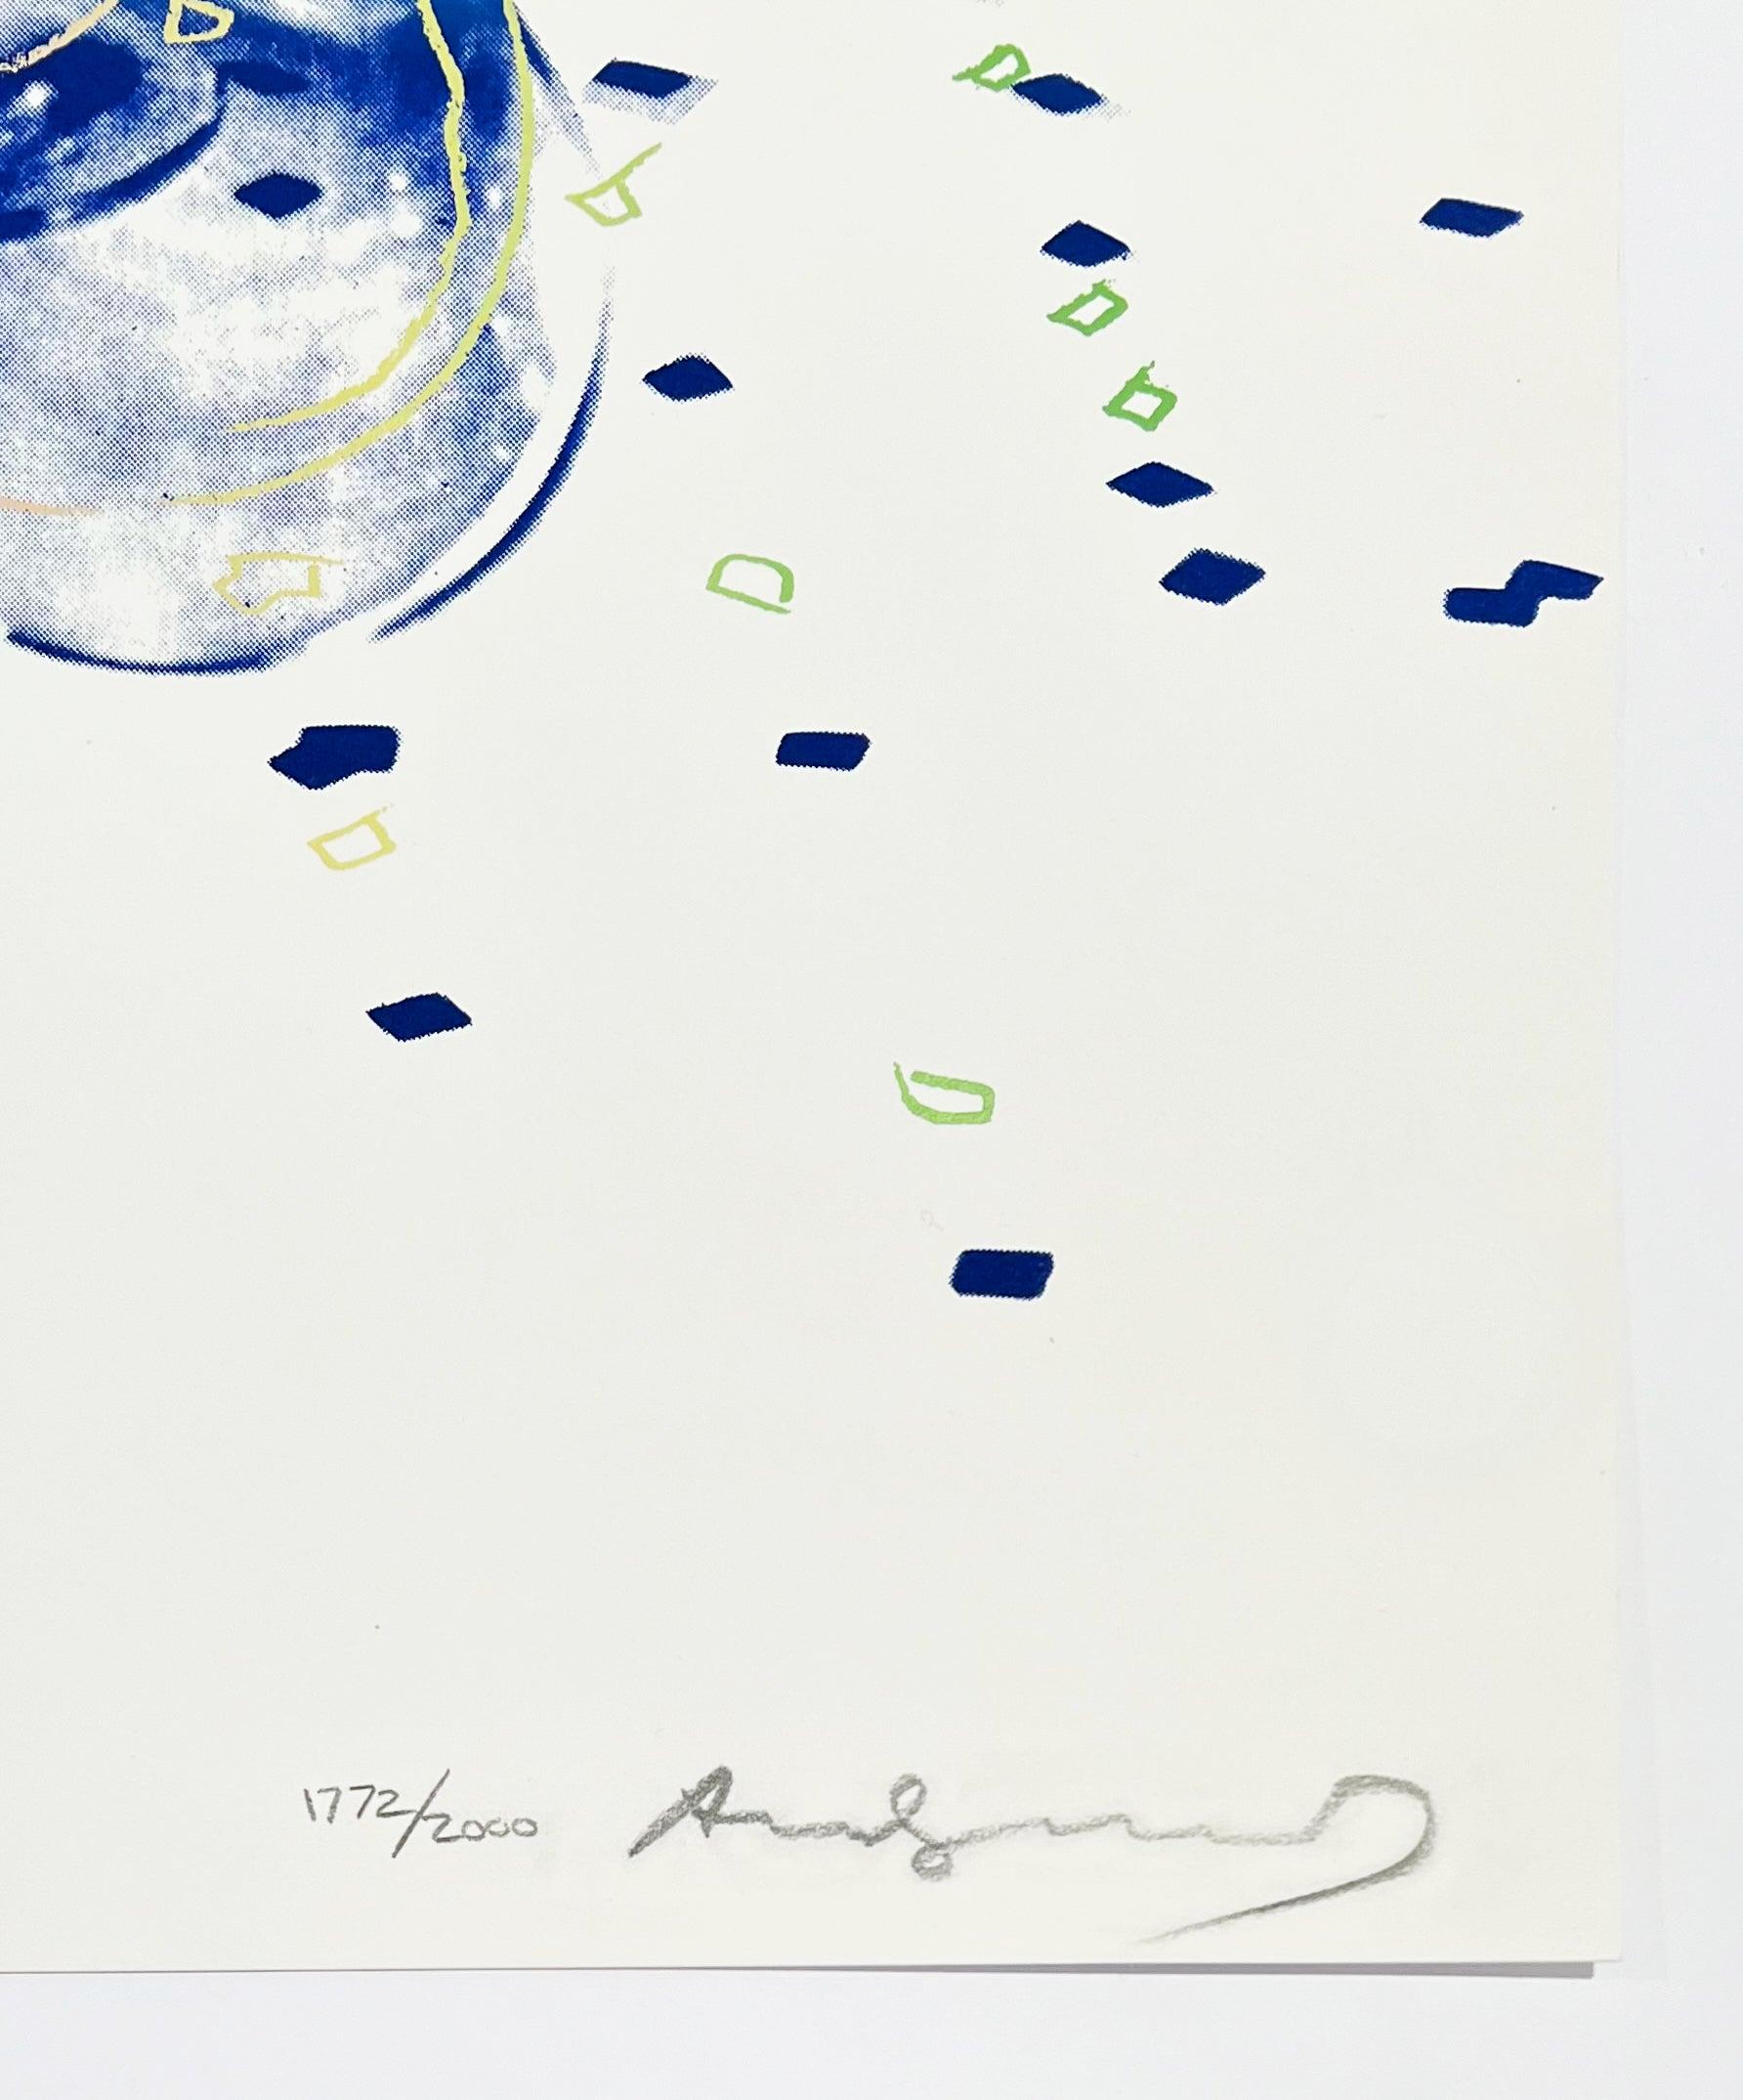 Künstler: Andy Warhol
Titel: Ausschuss 2000
Medium: Siebdruck auf Lenox Museum Board
Datum: 1982
Auflage: 1772/2000
Rahmen Größe: 37